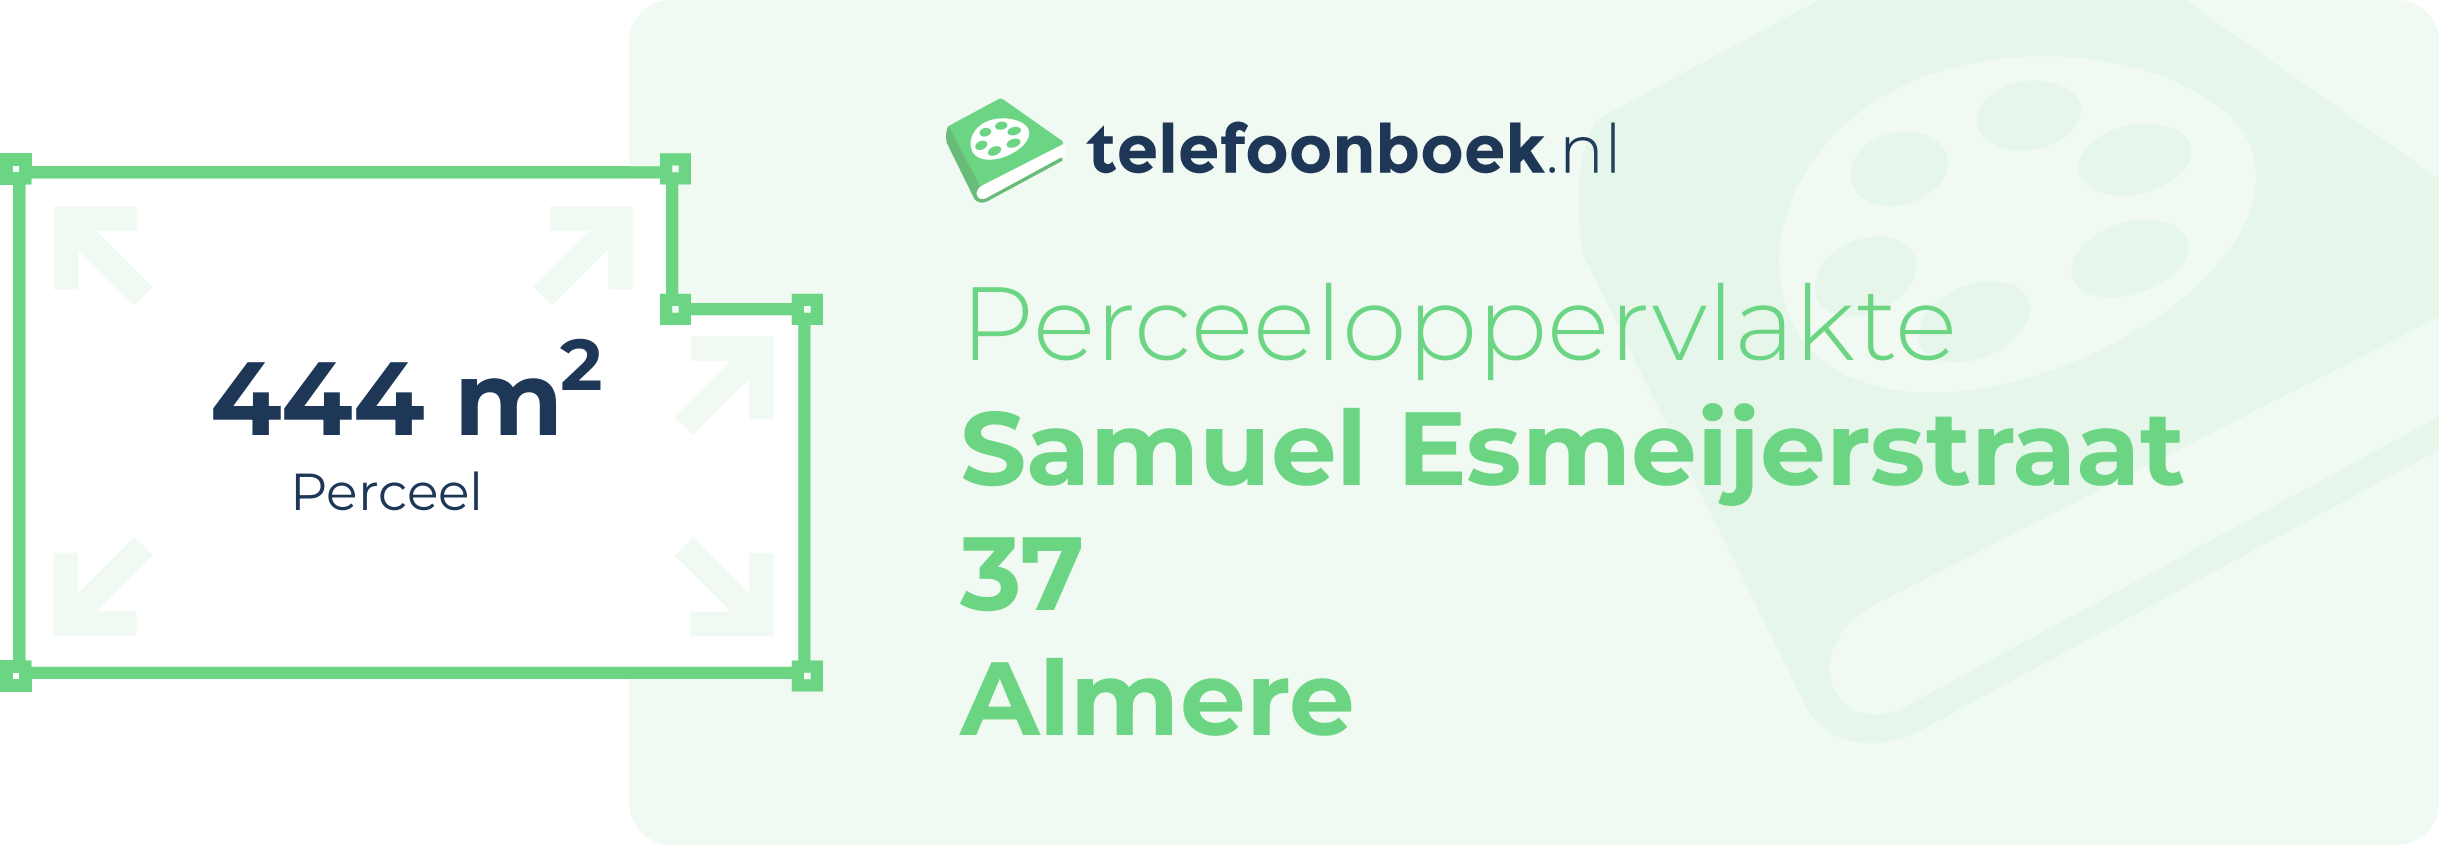 Perceeloppervlakte Samuel Esmeijerstraat 37 Almere